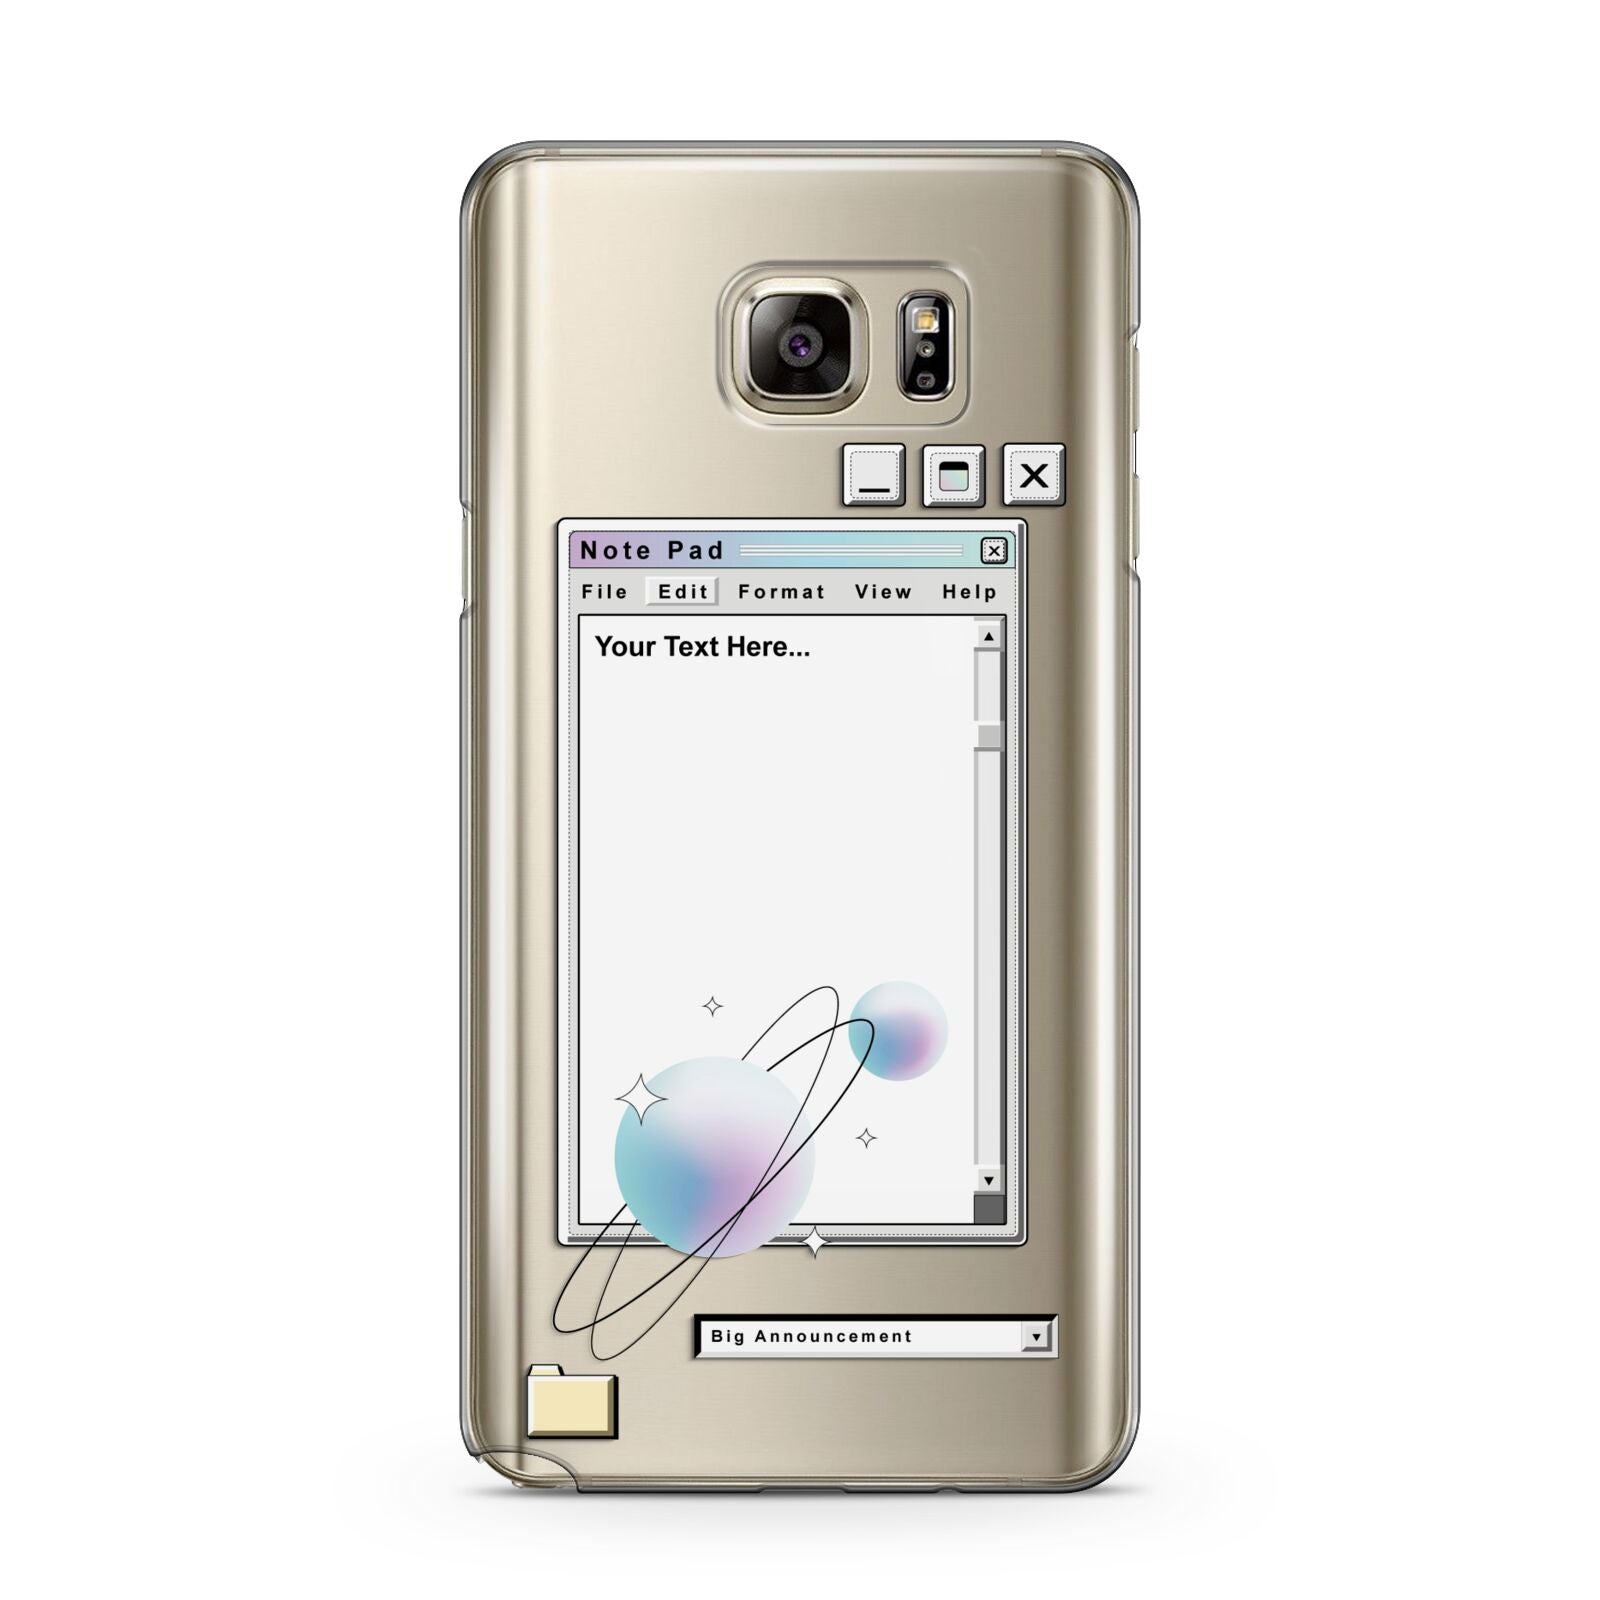 Retro Note Pad Samsung Galaxy Note 5 Case